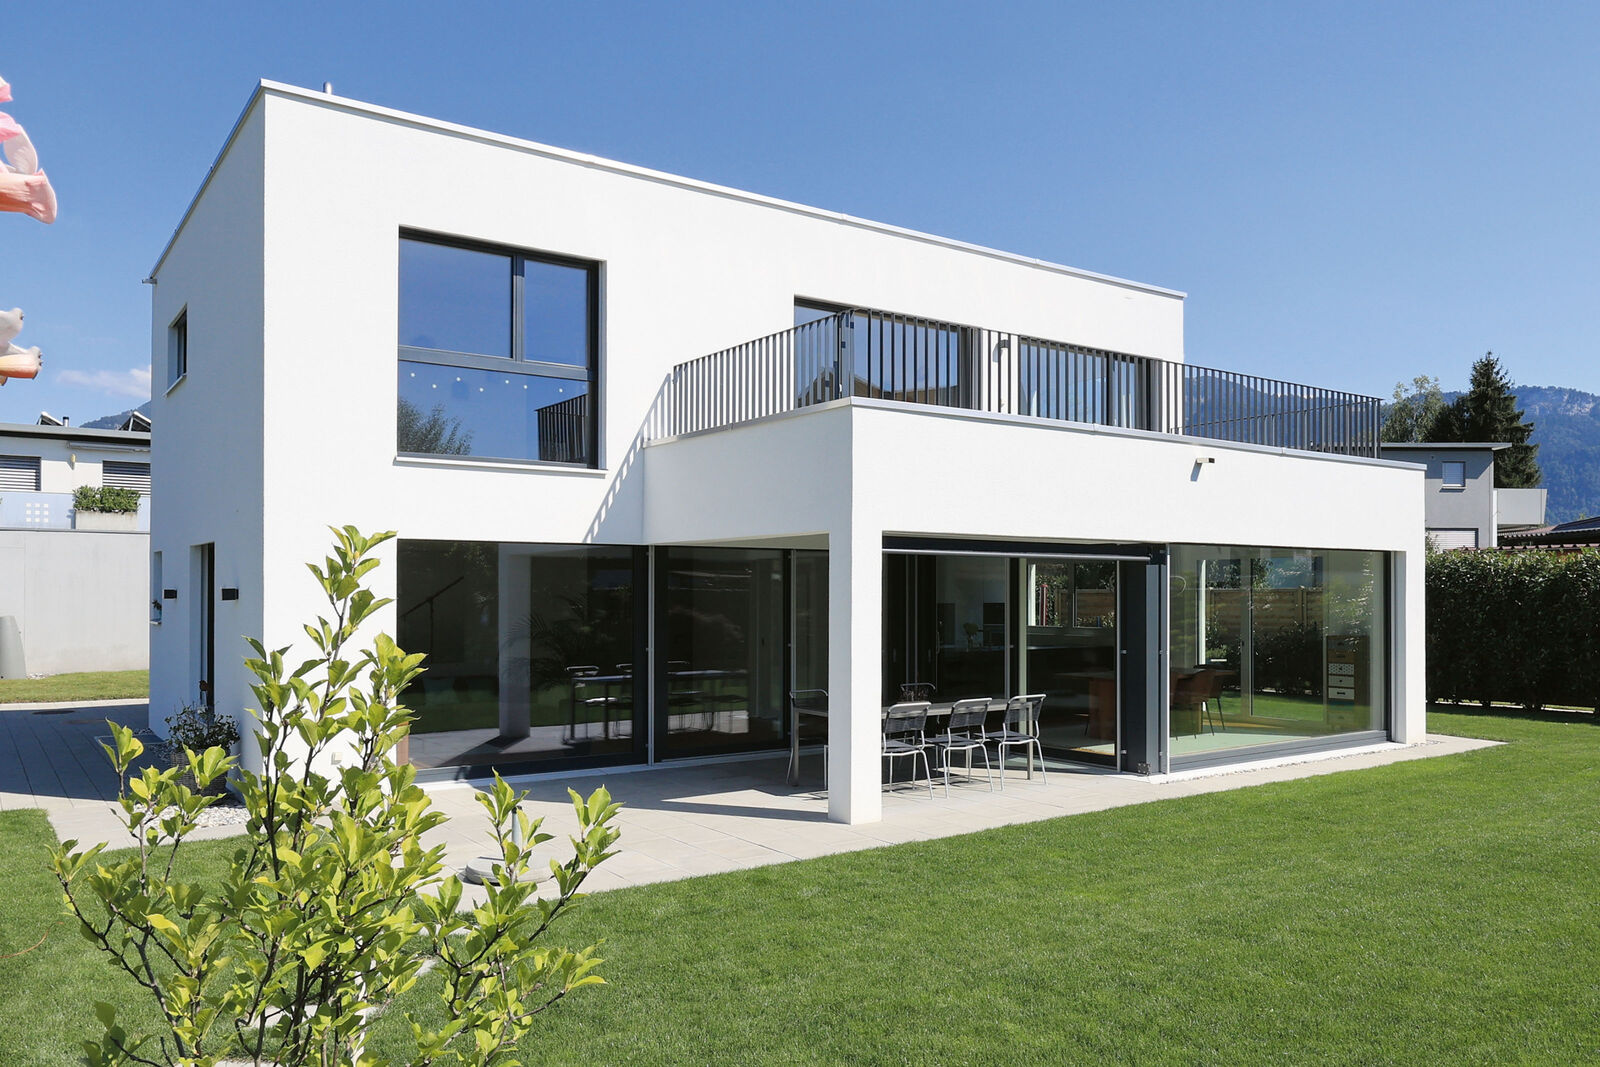 Mit dem Hauskonzept «Mea» hat Kobelt ein modernes Einfamilienhaus geschaffen, bei dem die Wünsche der Bauherrschaft und die Eigenheiten des Baulandes berücksichtigt sind.